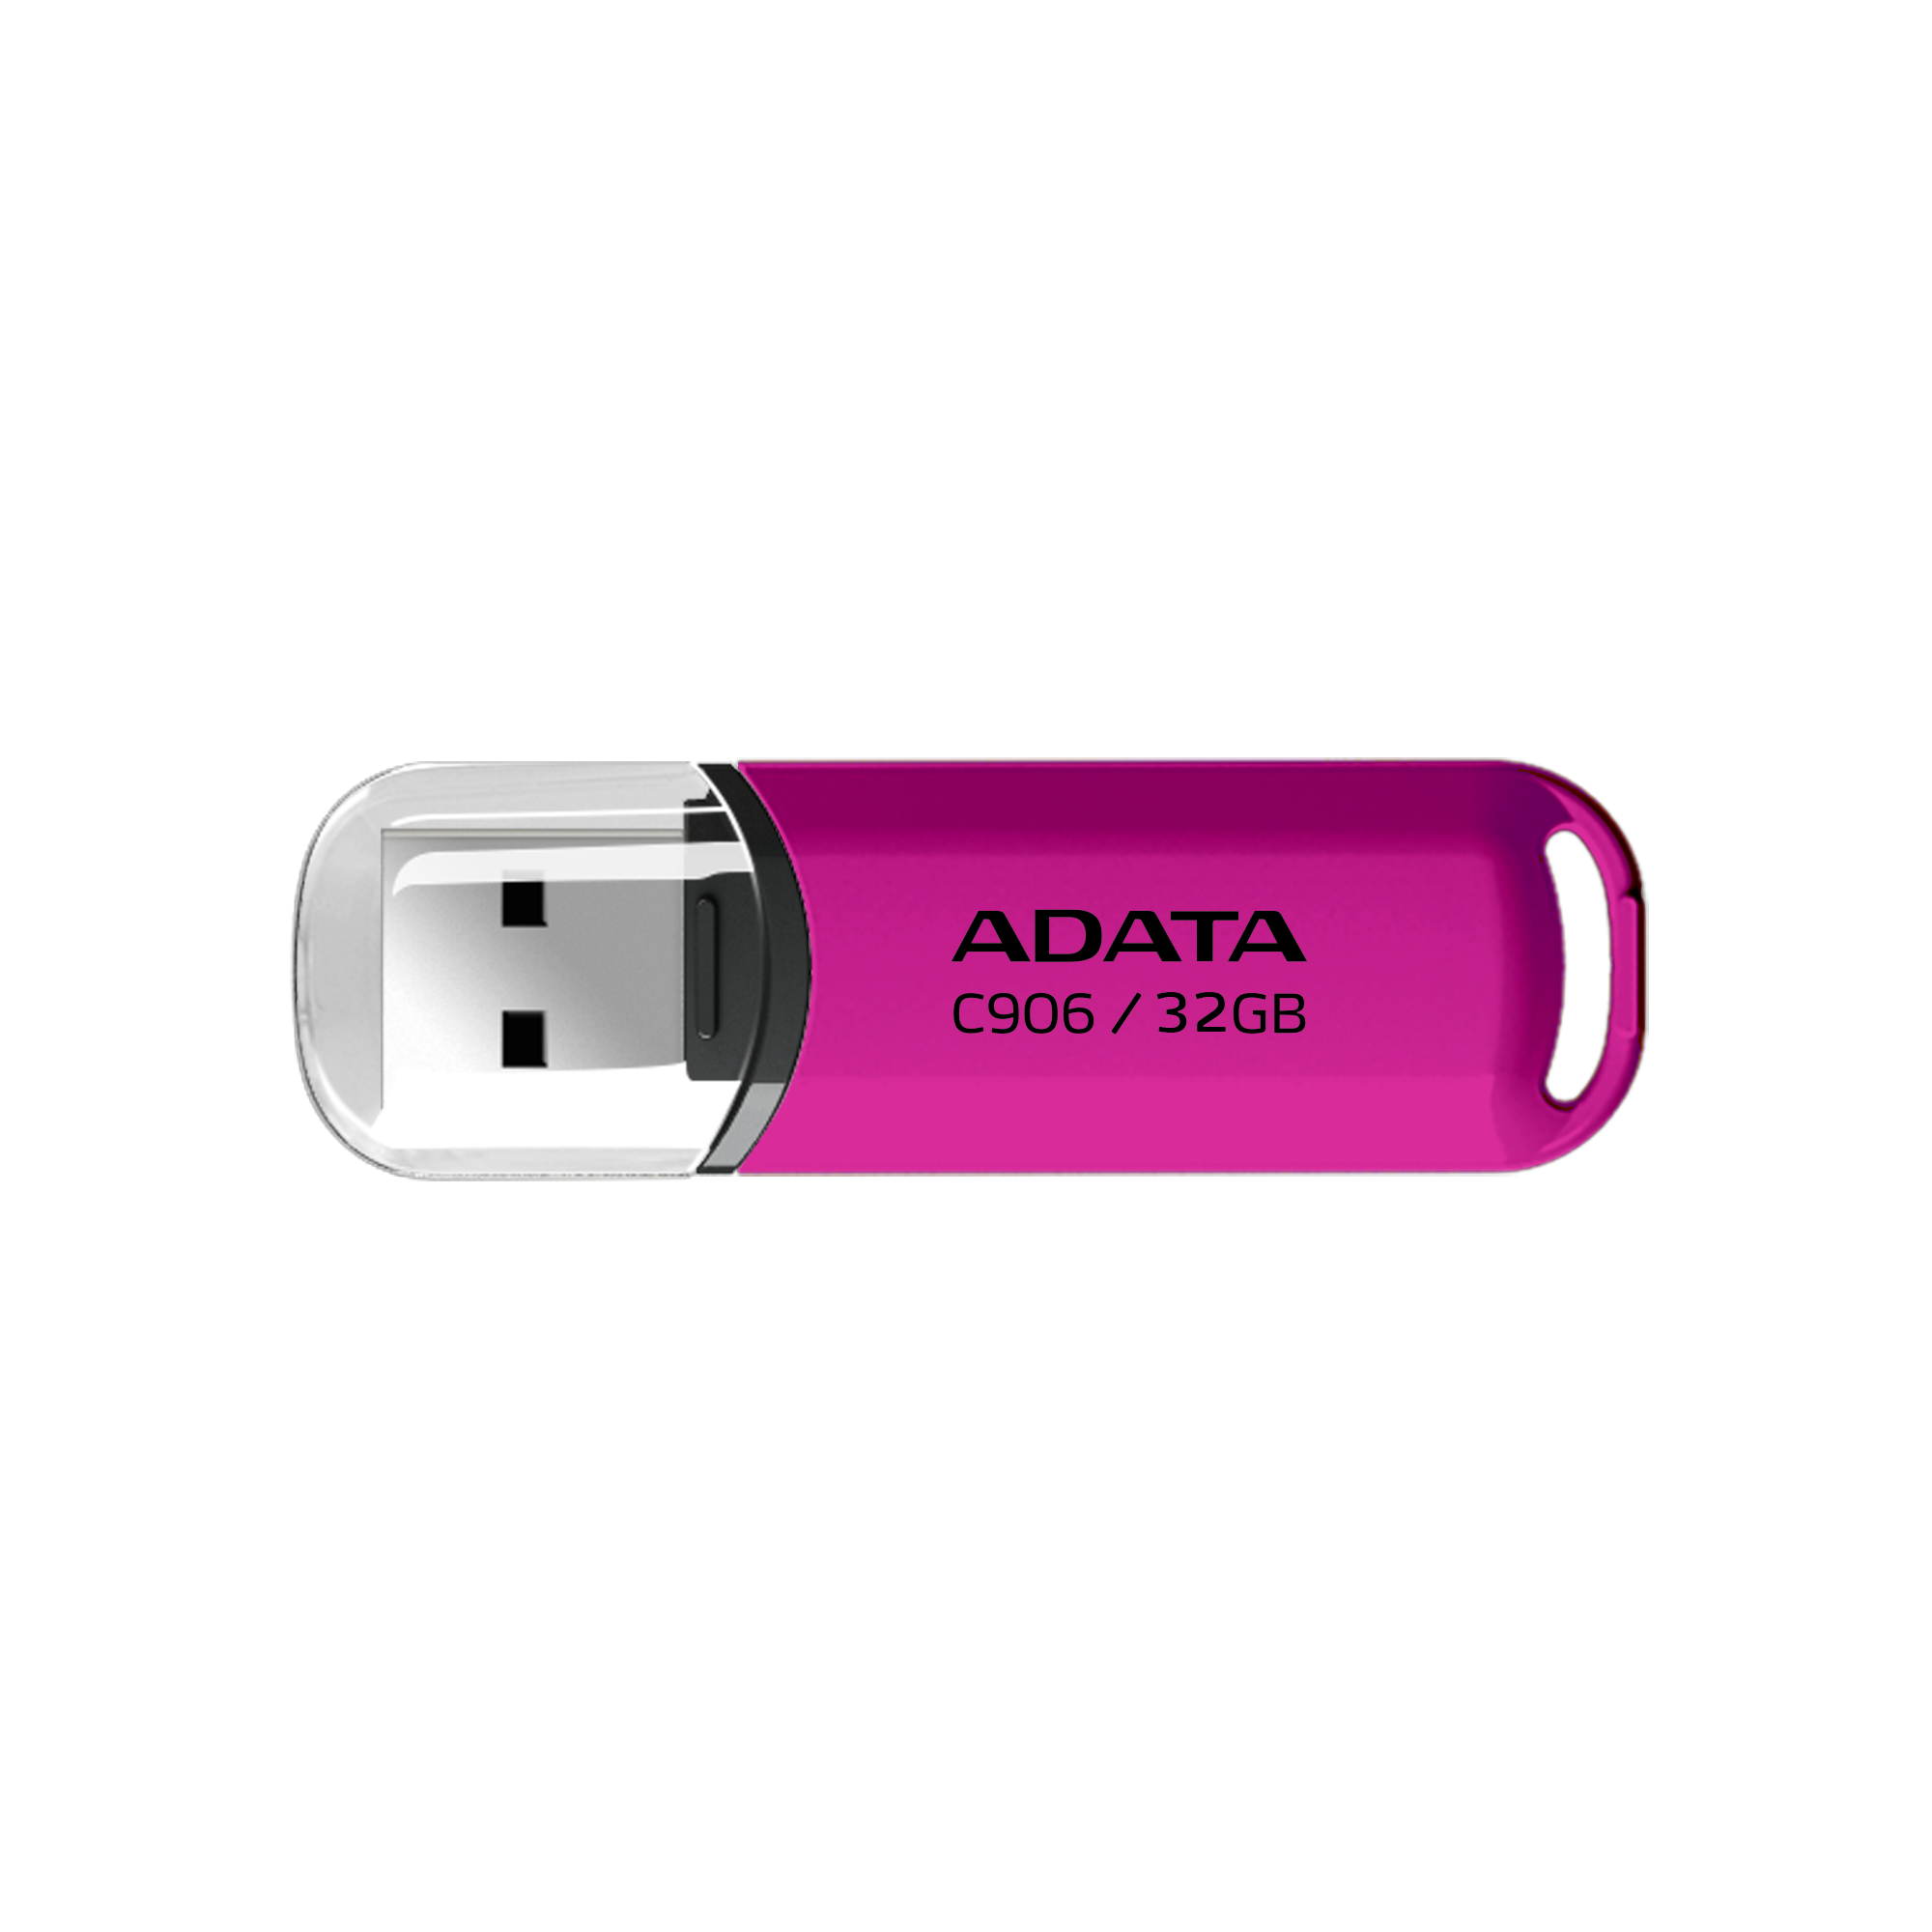 Memoria USB ADATA AC906-32G-RPP